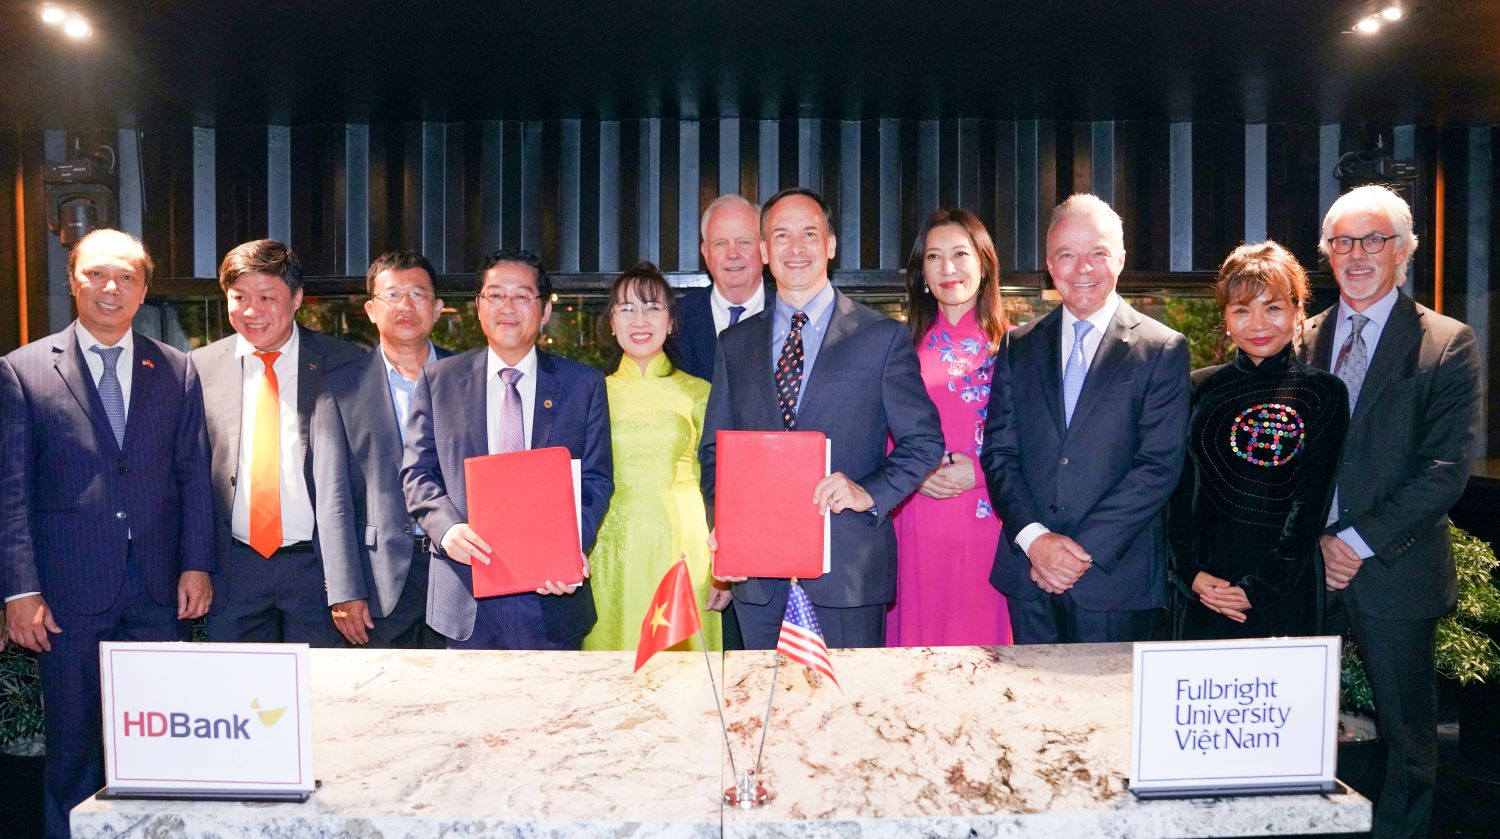 Đại học Fulbright Việt Nam và HDBank ký kết cung cấp vốn đối ứng  - Ảnh 2.